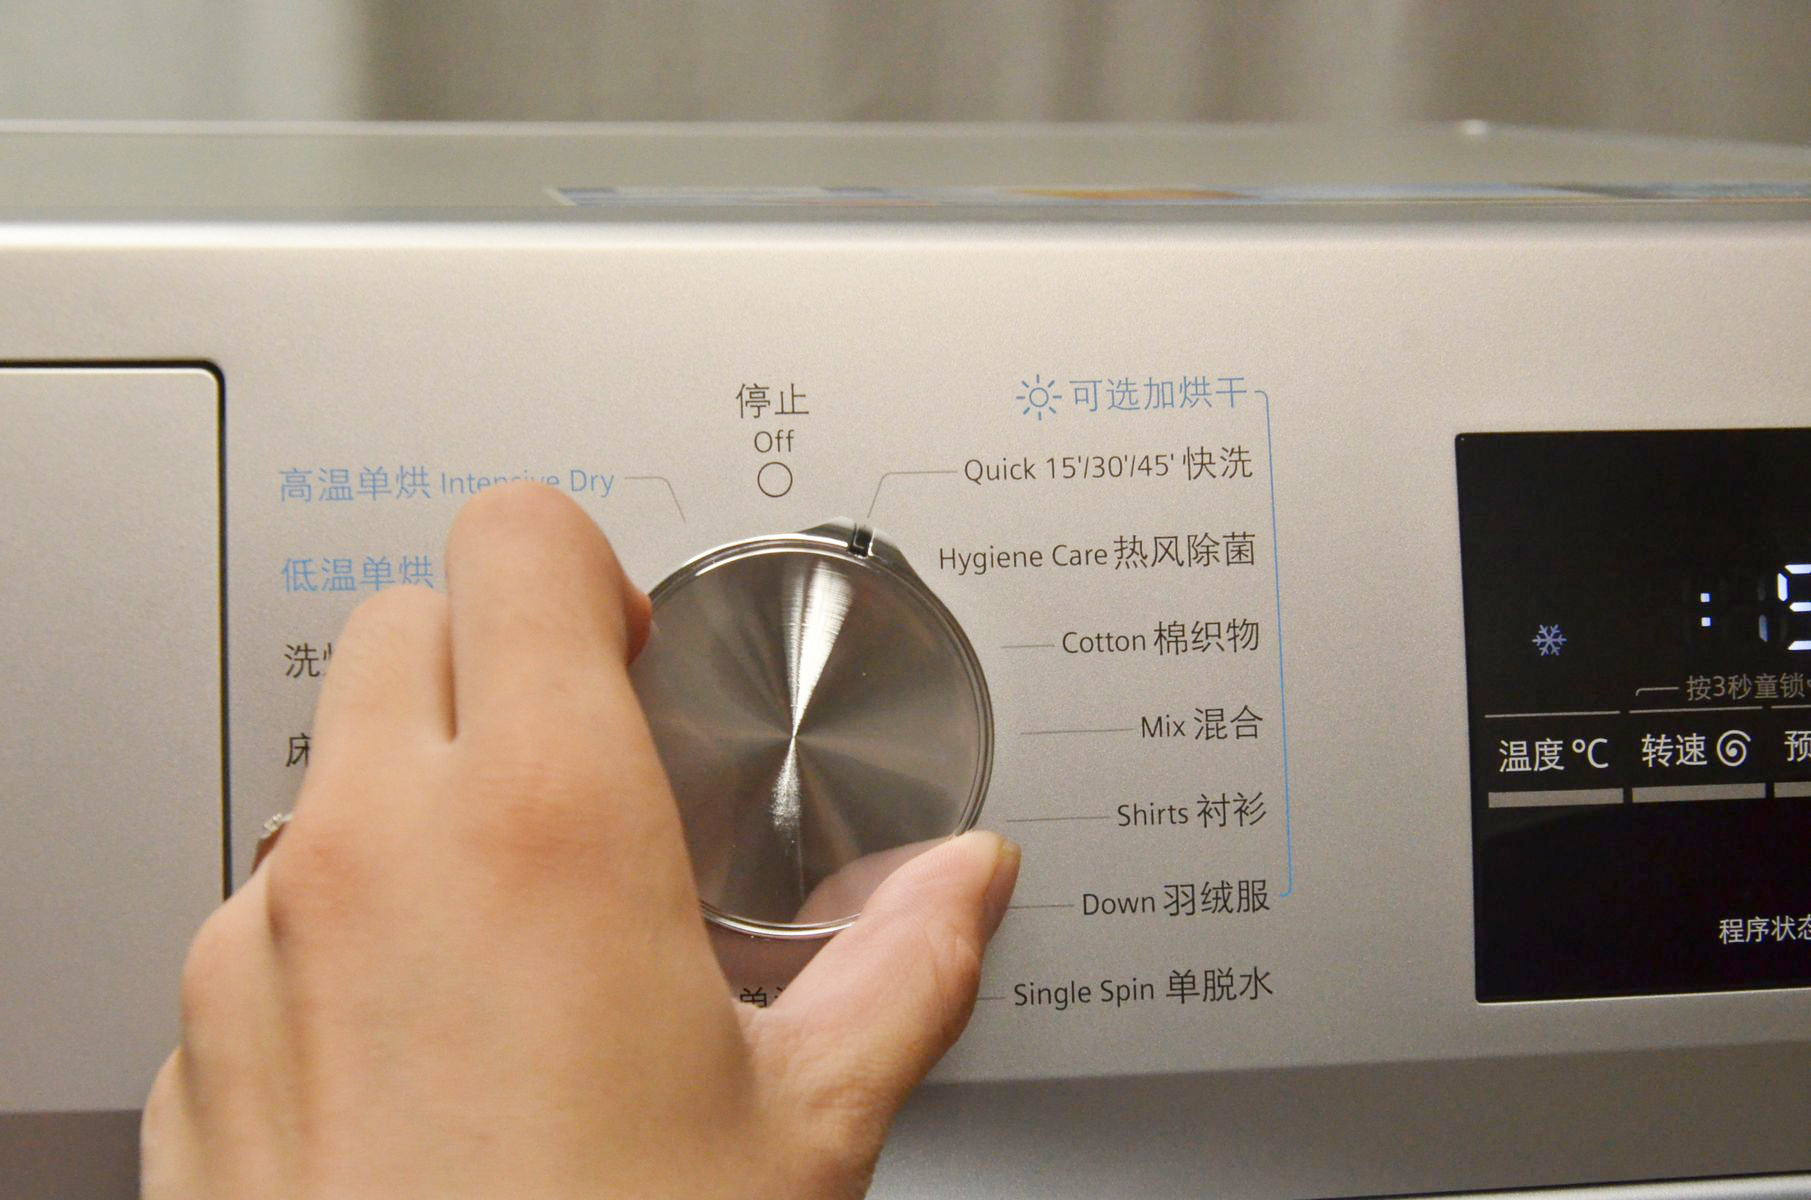 即洗即干 西门子iq300系列洗衣干衣机评测